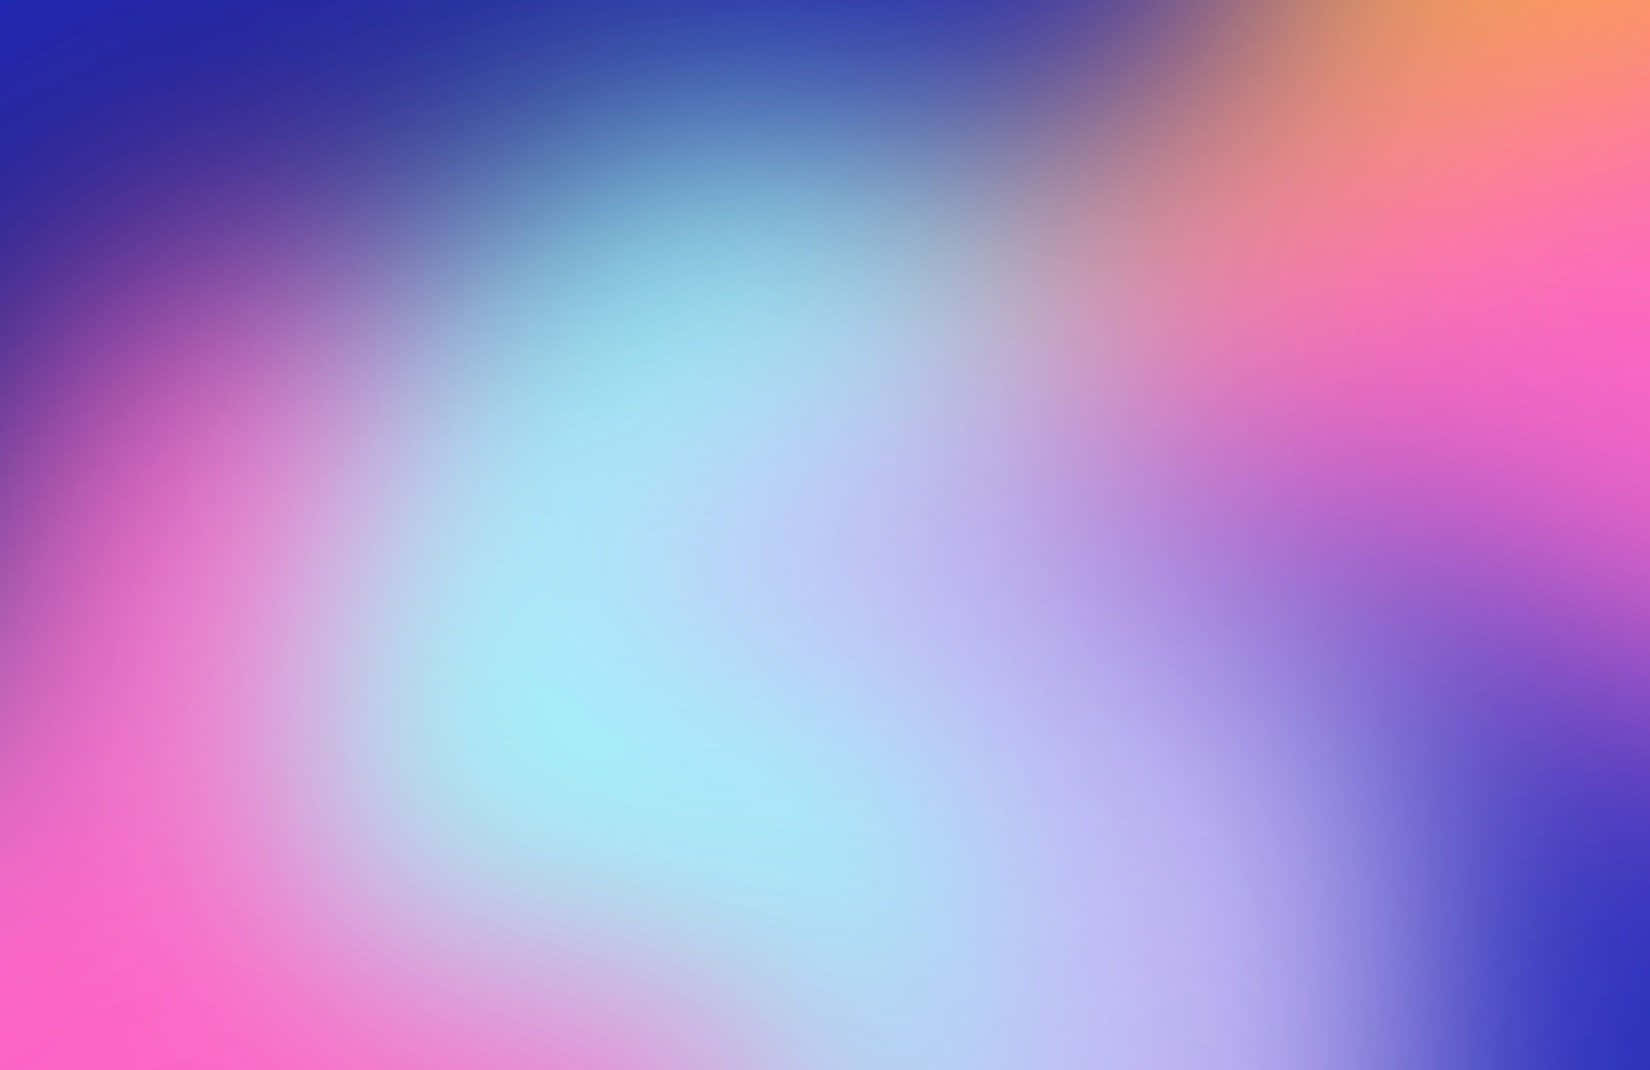 Fångade Livfulla Färgerna I Din Aura Genom Färgterapi På Dator- Eller Mobilskärmen. Wallpaper